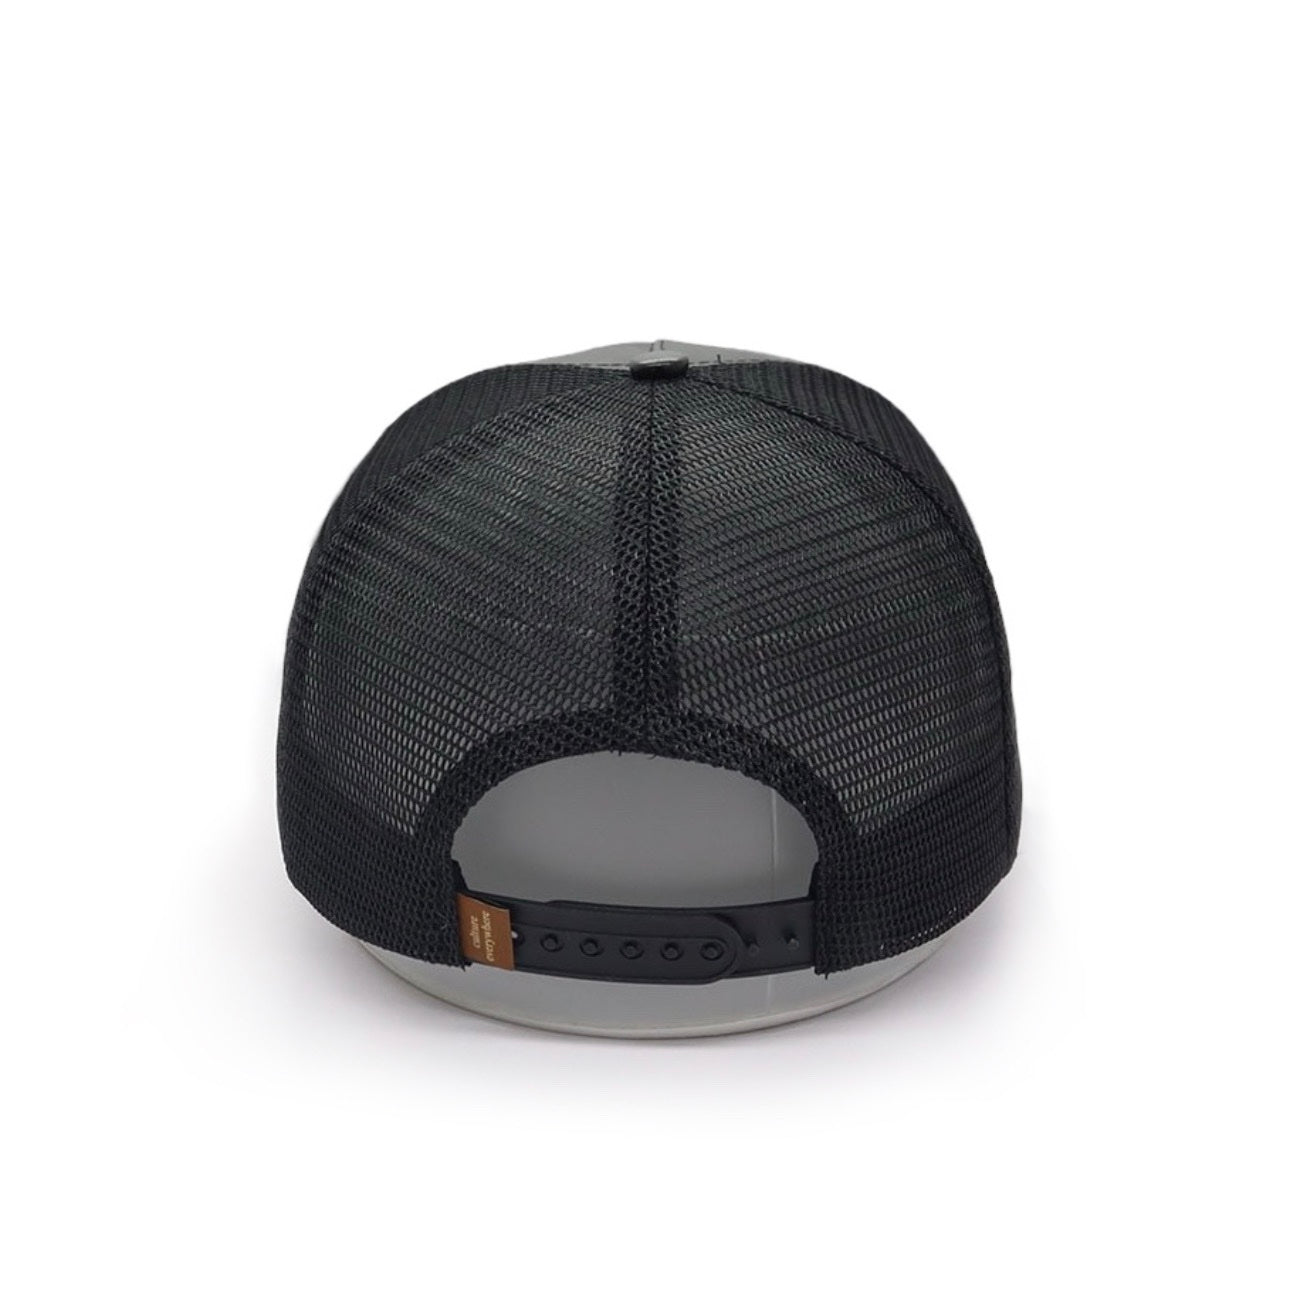 Mr.LIMOU - haut de gamme casquette noir cuir similicuir Eclipse Ebene 2